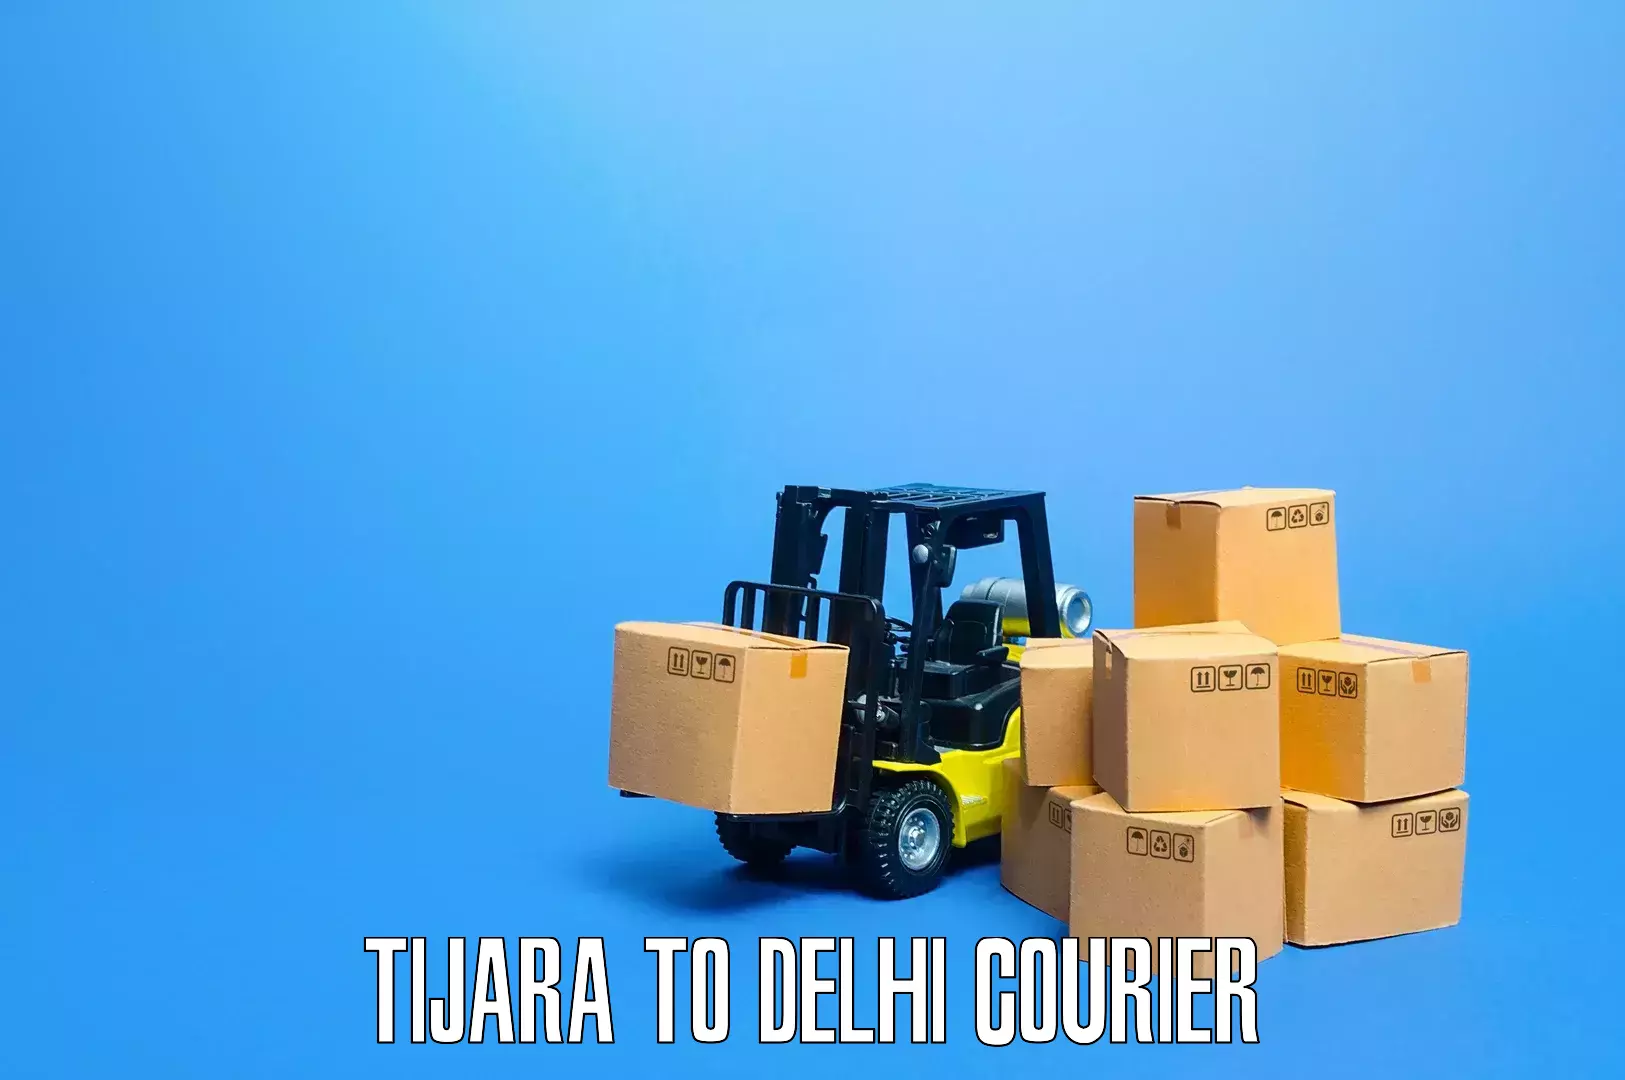 Furniture moving and handling Tijara to Lodhi Road